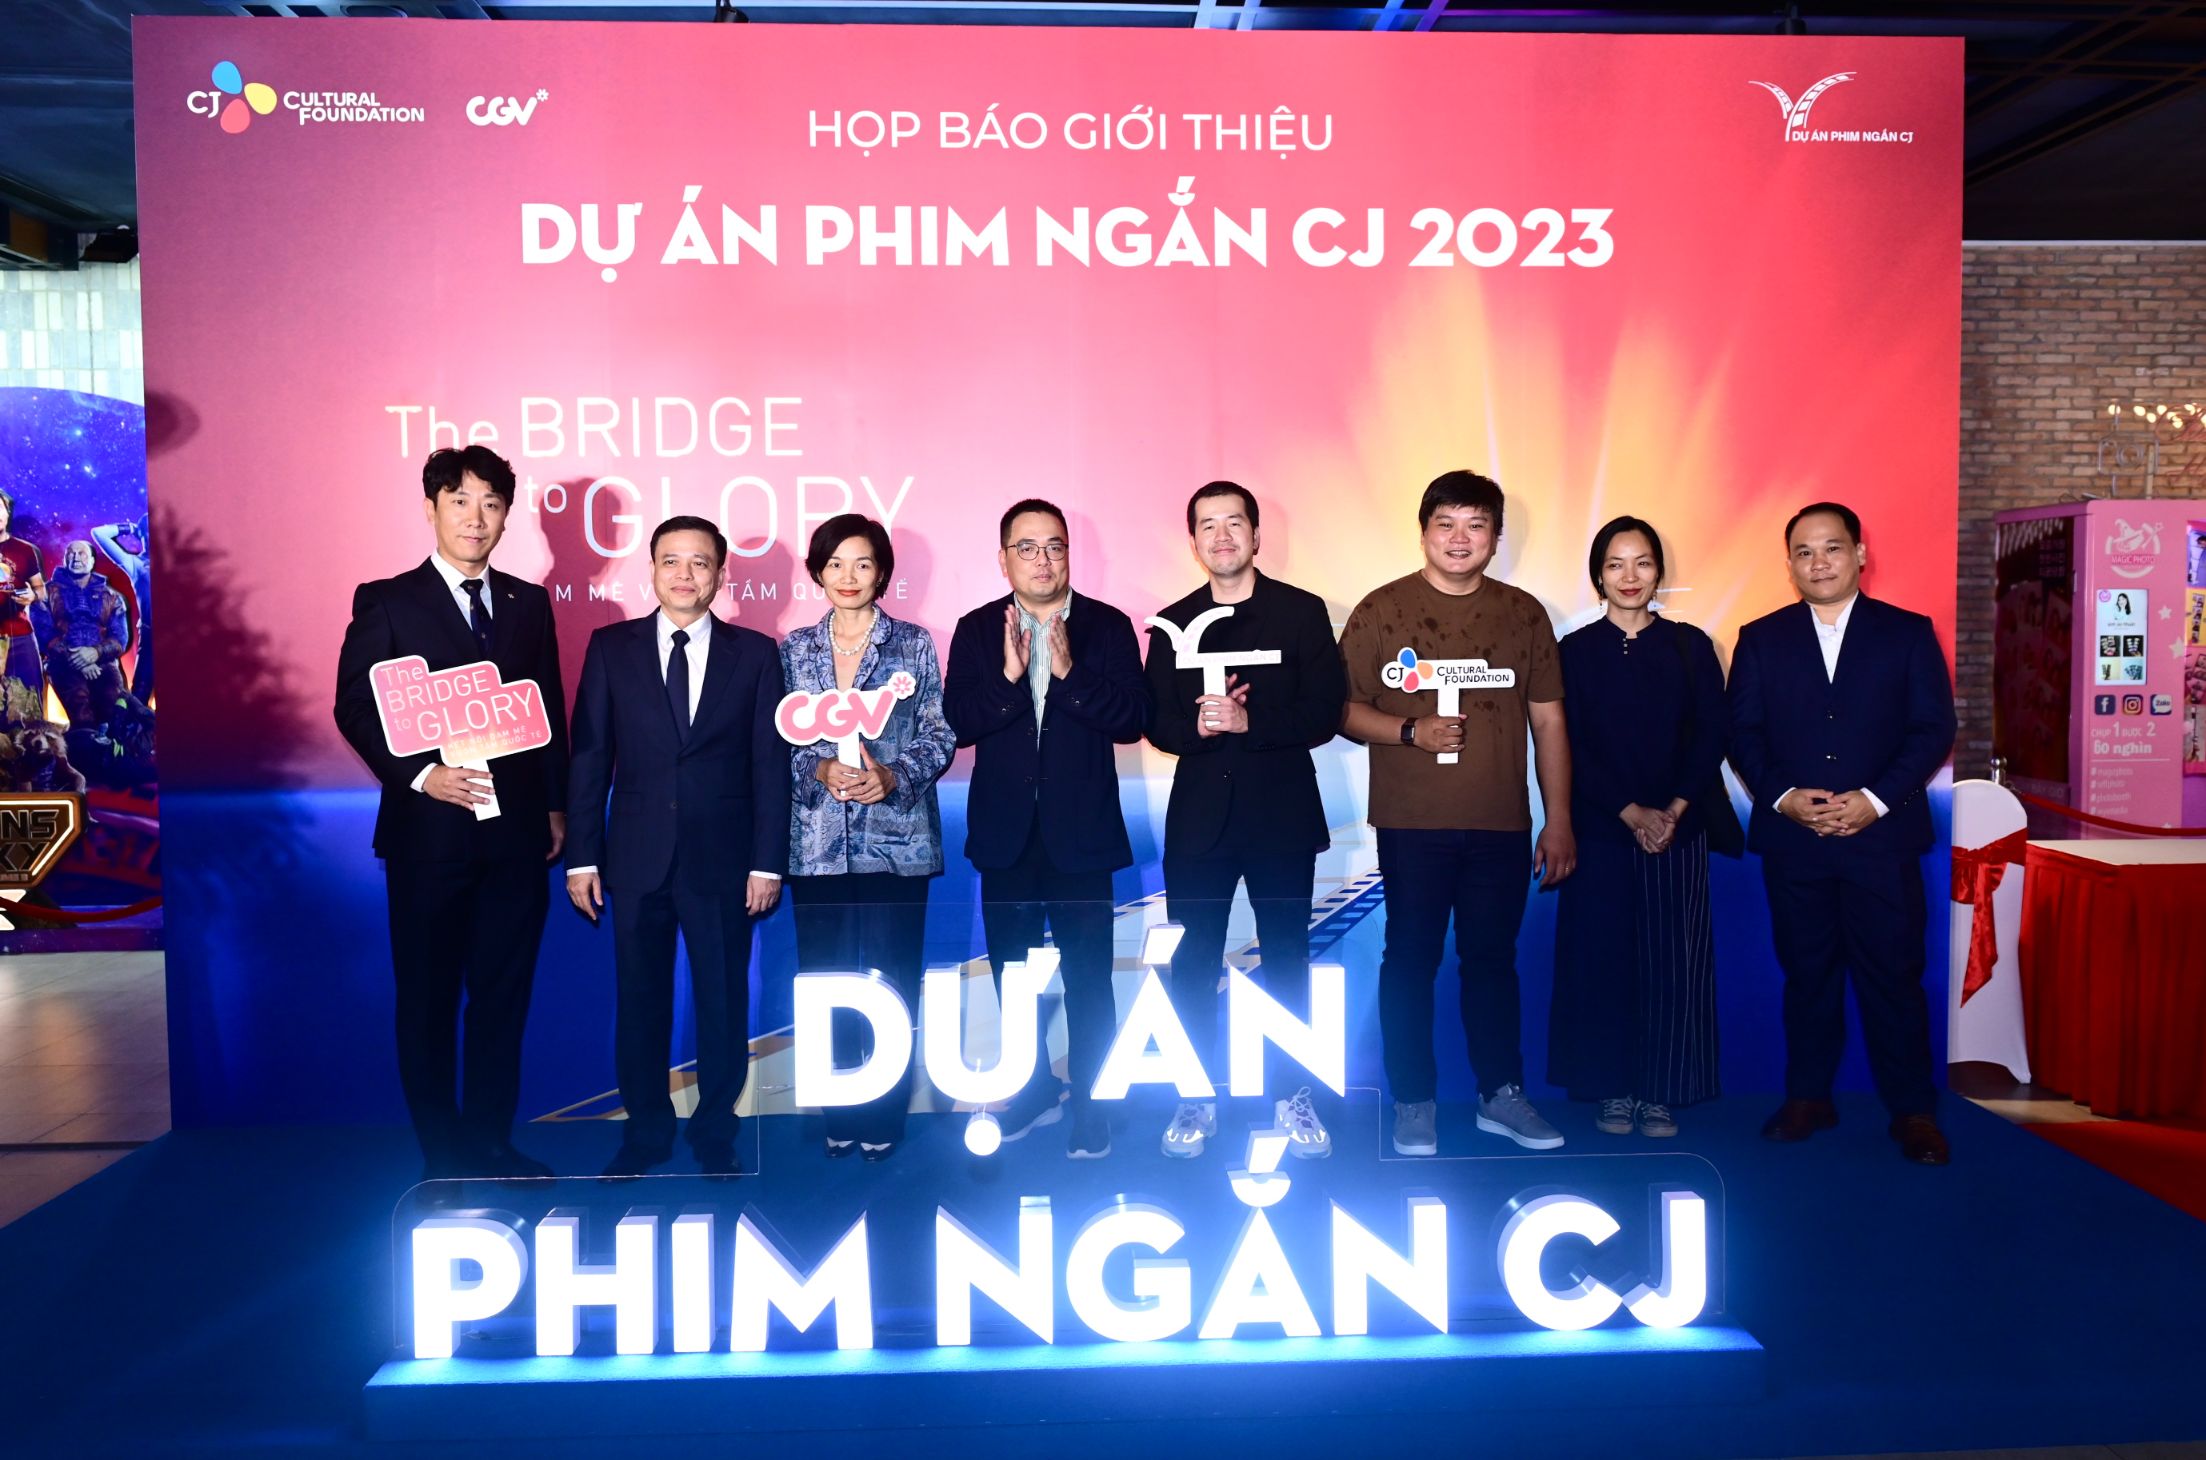 Dự án phim ngắn CJ 2023 2 Dự án phim ngắn CJ 2023 trở lại, đưa tài năng điện ảnh Việt vươn xa